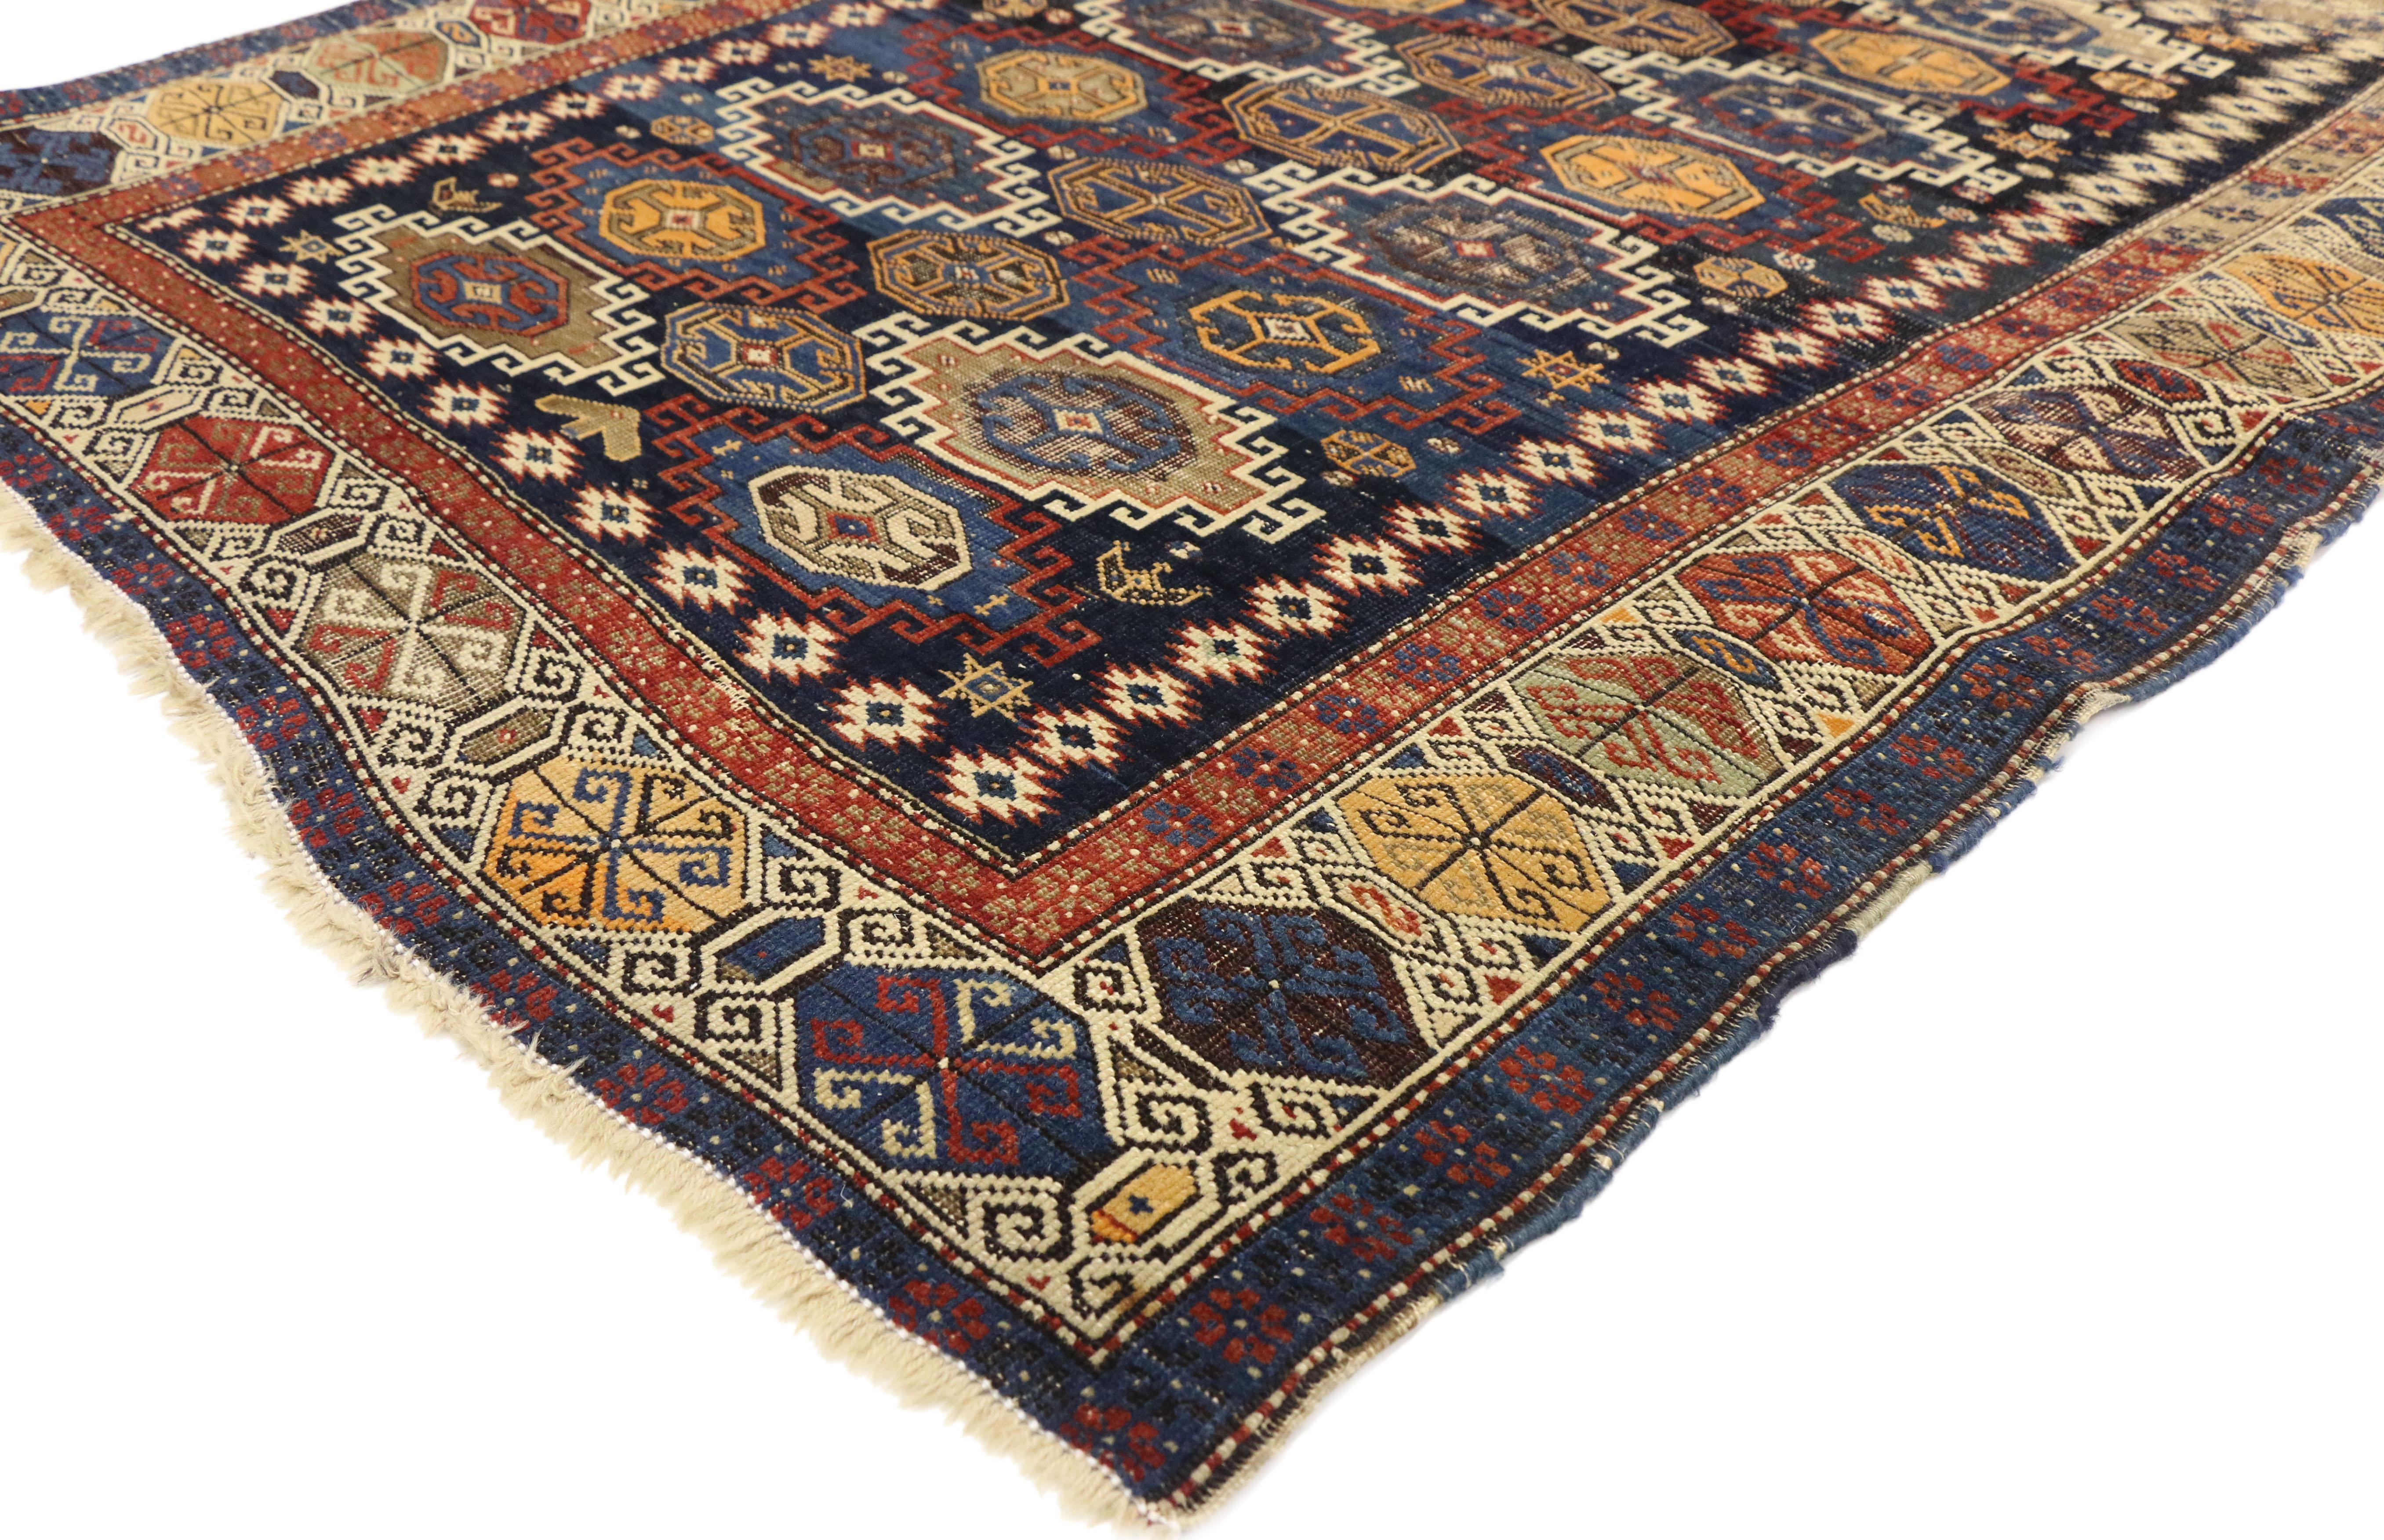 72884, tapis caucasien Kazak antique avec style tribal rustique, tapis carré. Ce tapis caucasien kazakh ancien, en laine nouée à la main et de style tribal rustique, présente des médaillons multicolores en gradins et crochetés, dans un motif général